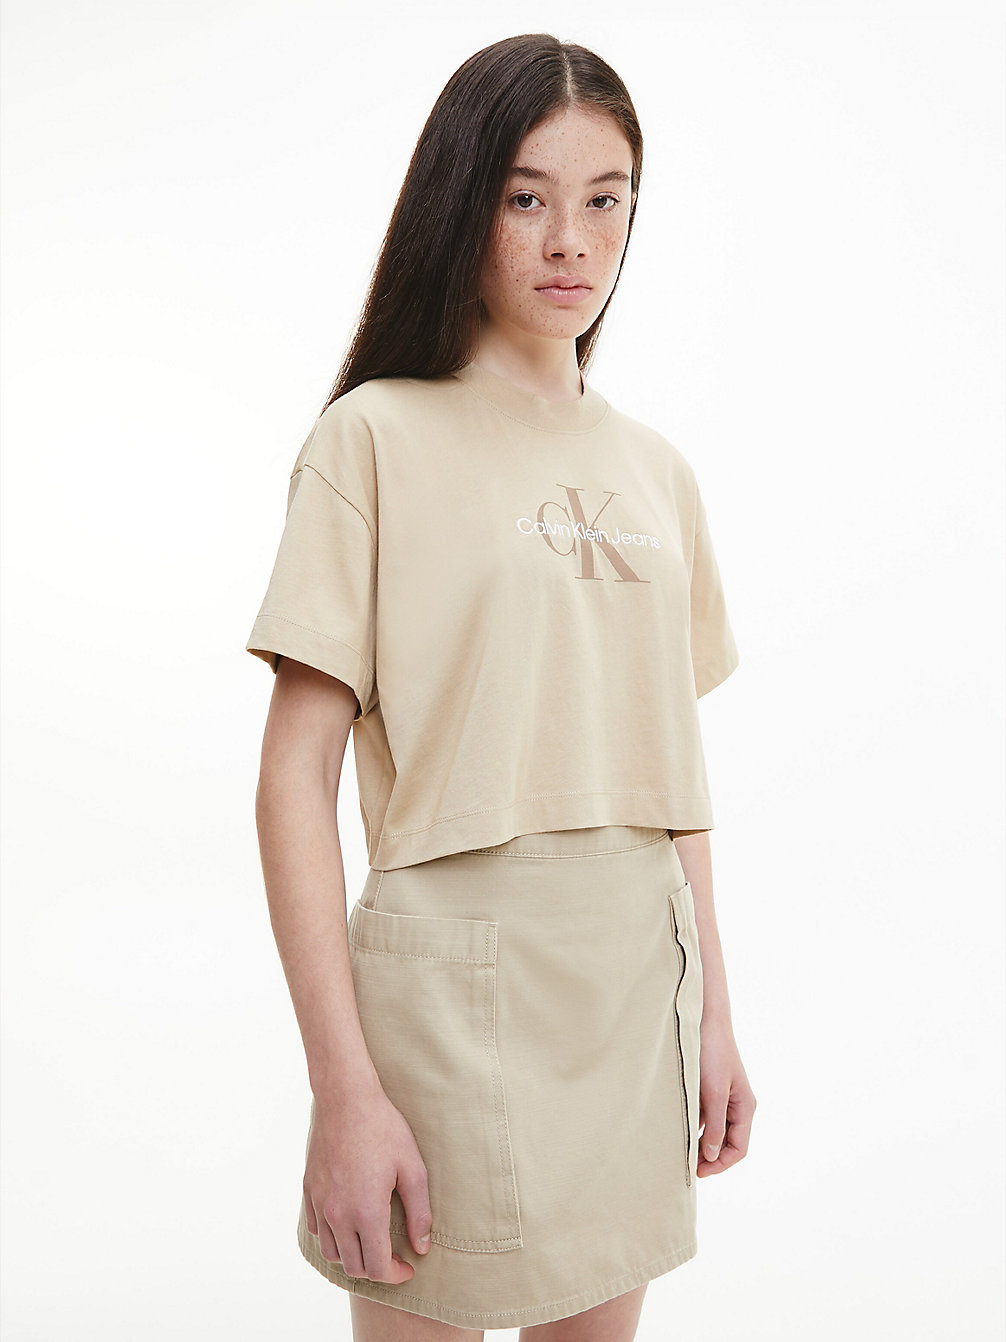 TRAVERTINE Cropped Monogram T-Shirt undefined women Calvin Klein